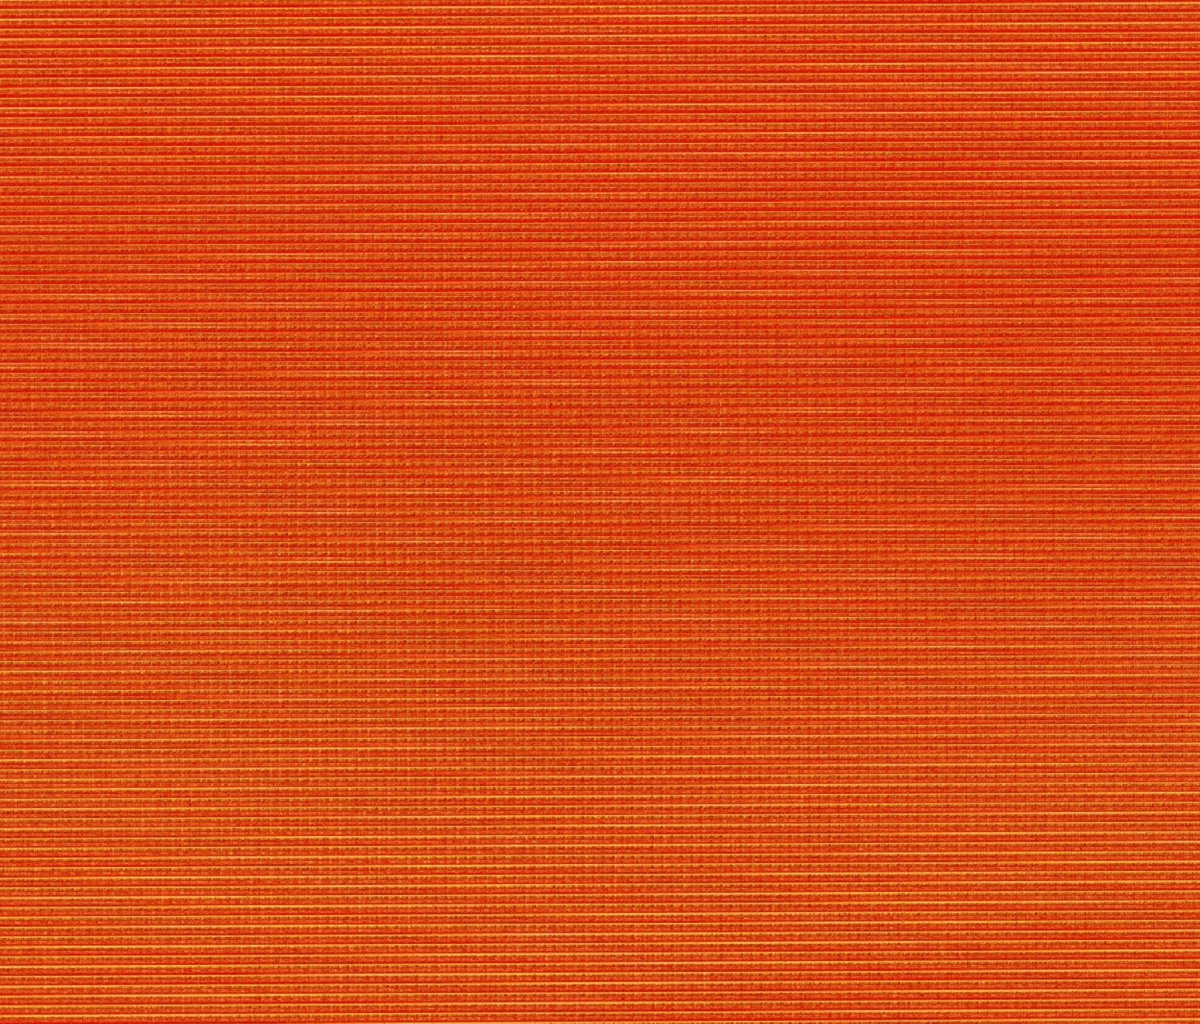 Orange texture screenshot #1 1200x1024